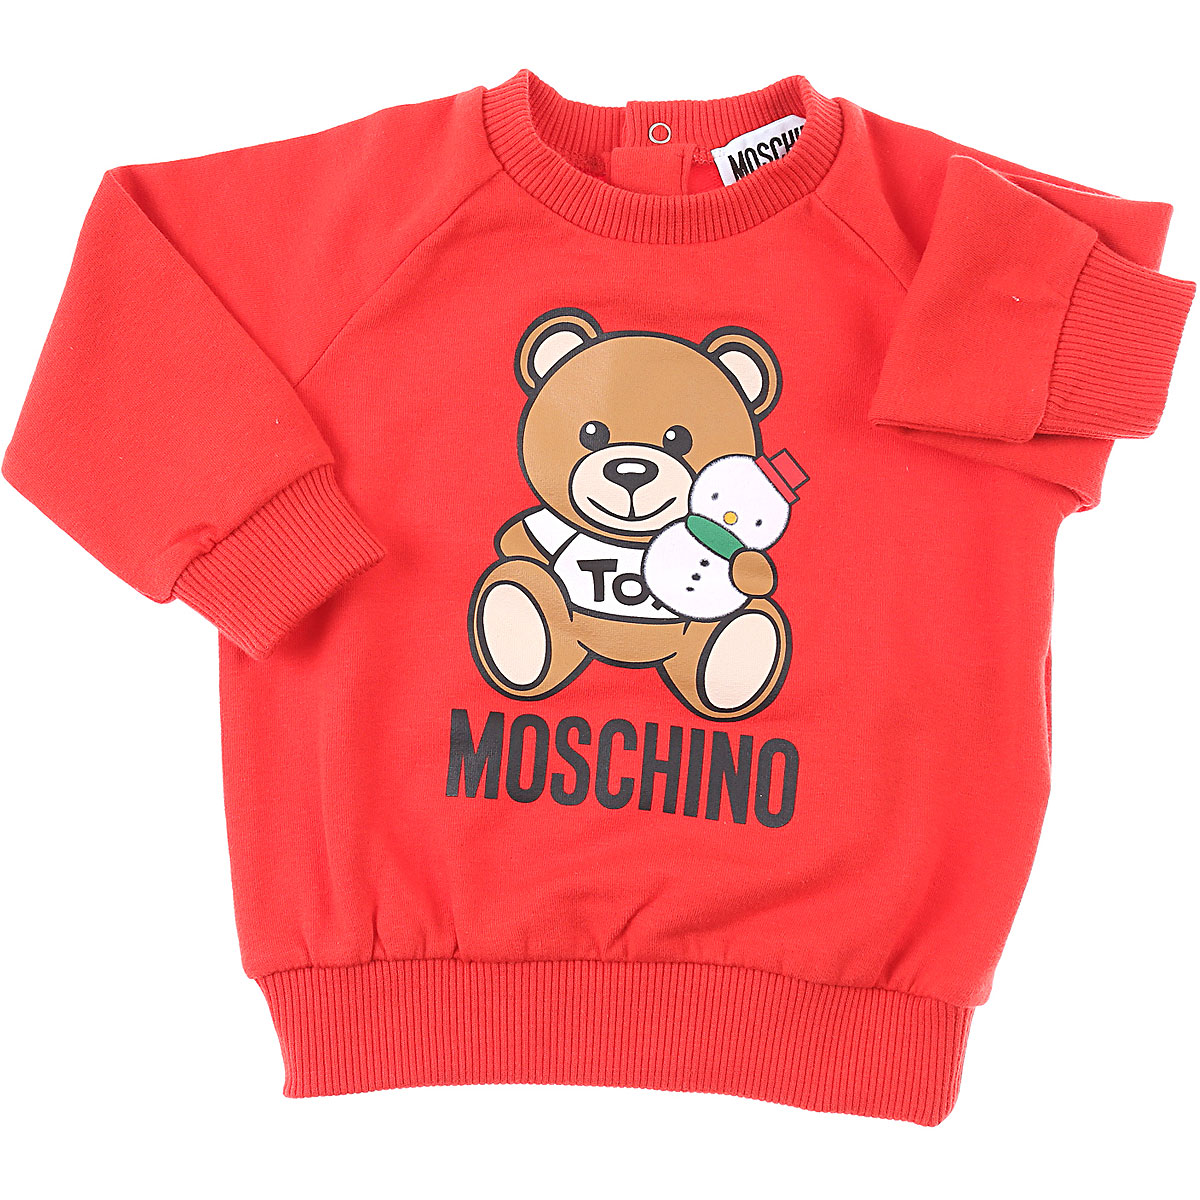 Moschino Baby Sweatshirt & Kapuzenpullover für Jungen Günstig im Sale, Rot, Baumwolle, 2017, 12 M 18M 24M 2Y 3Y 6M 9M